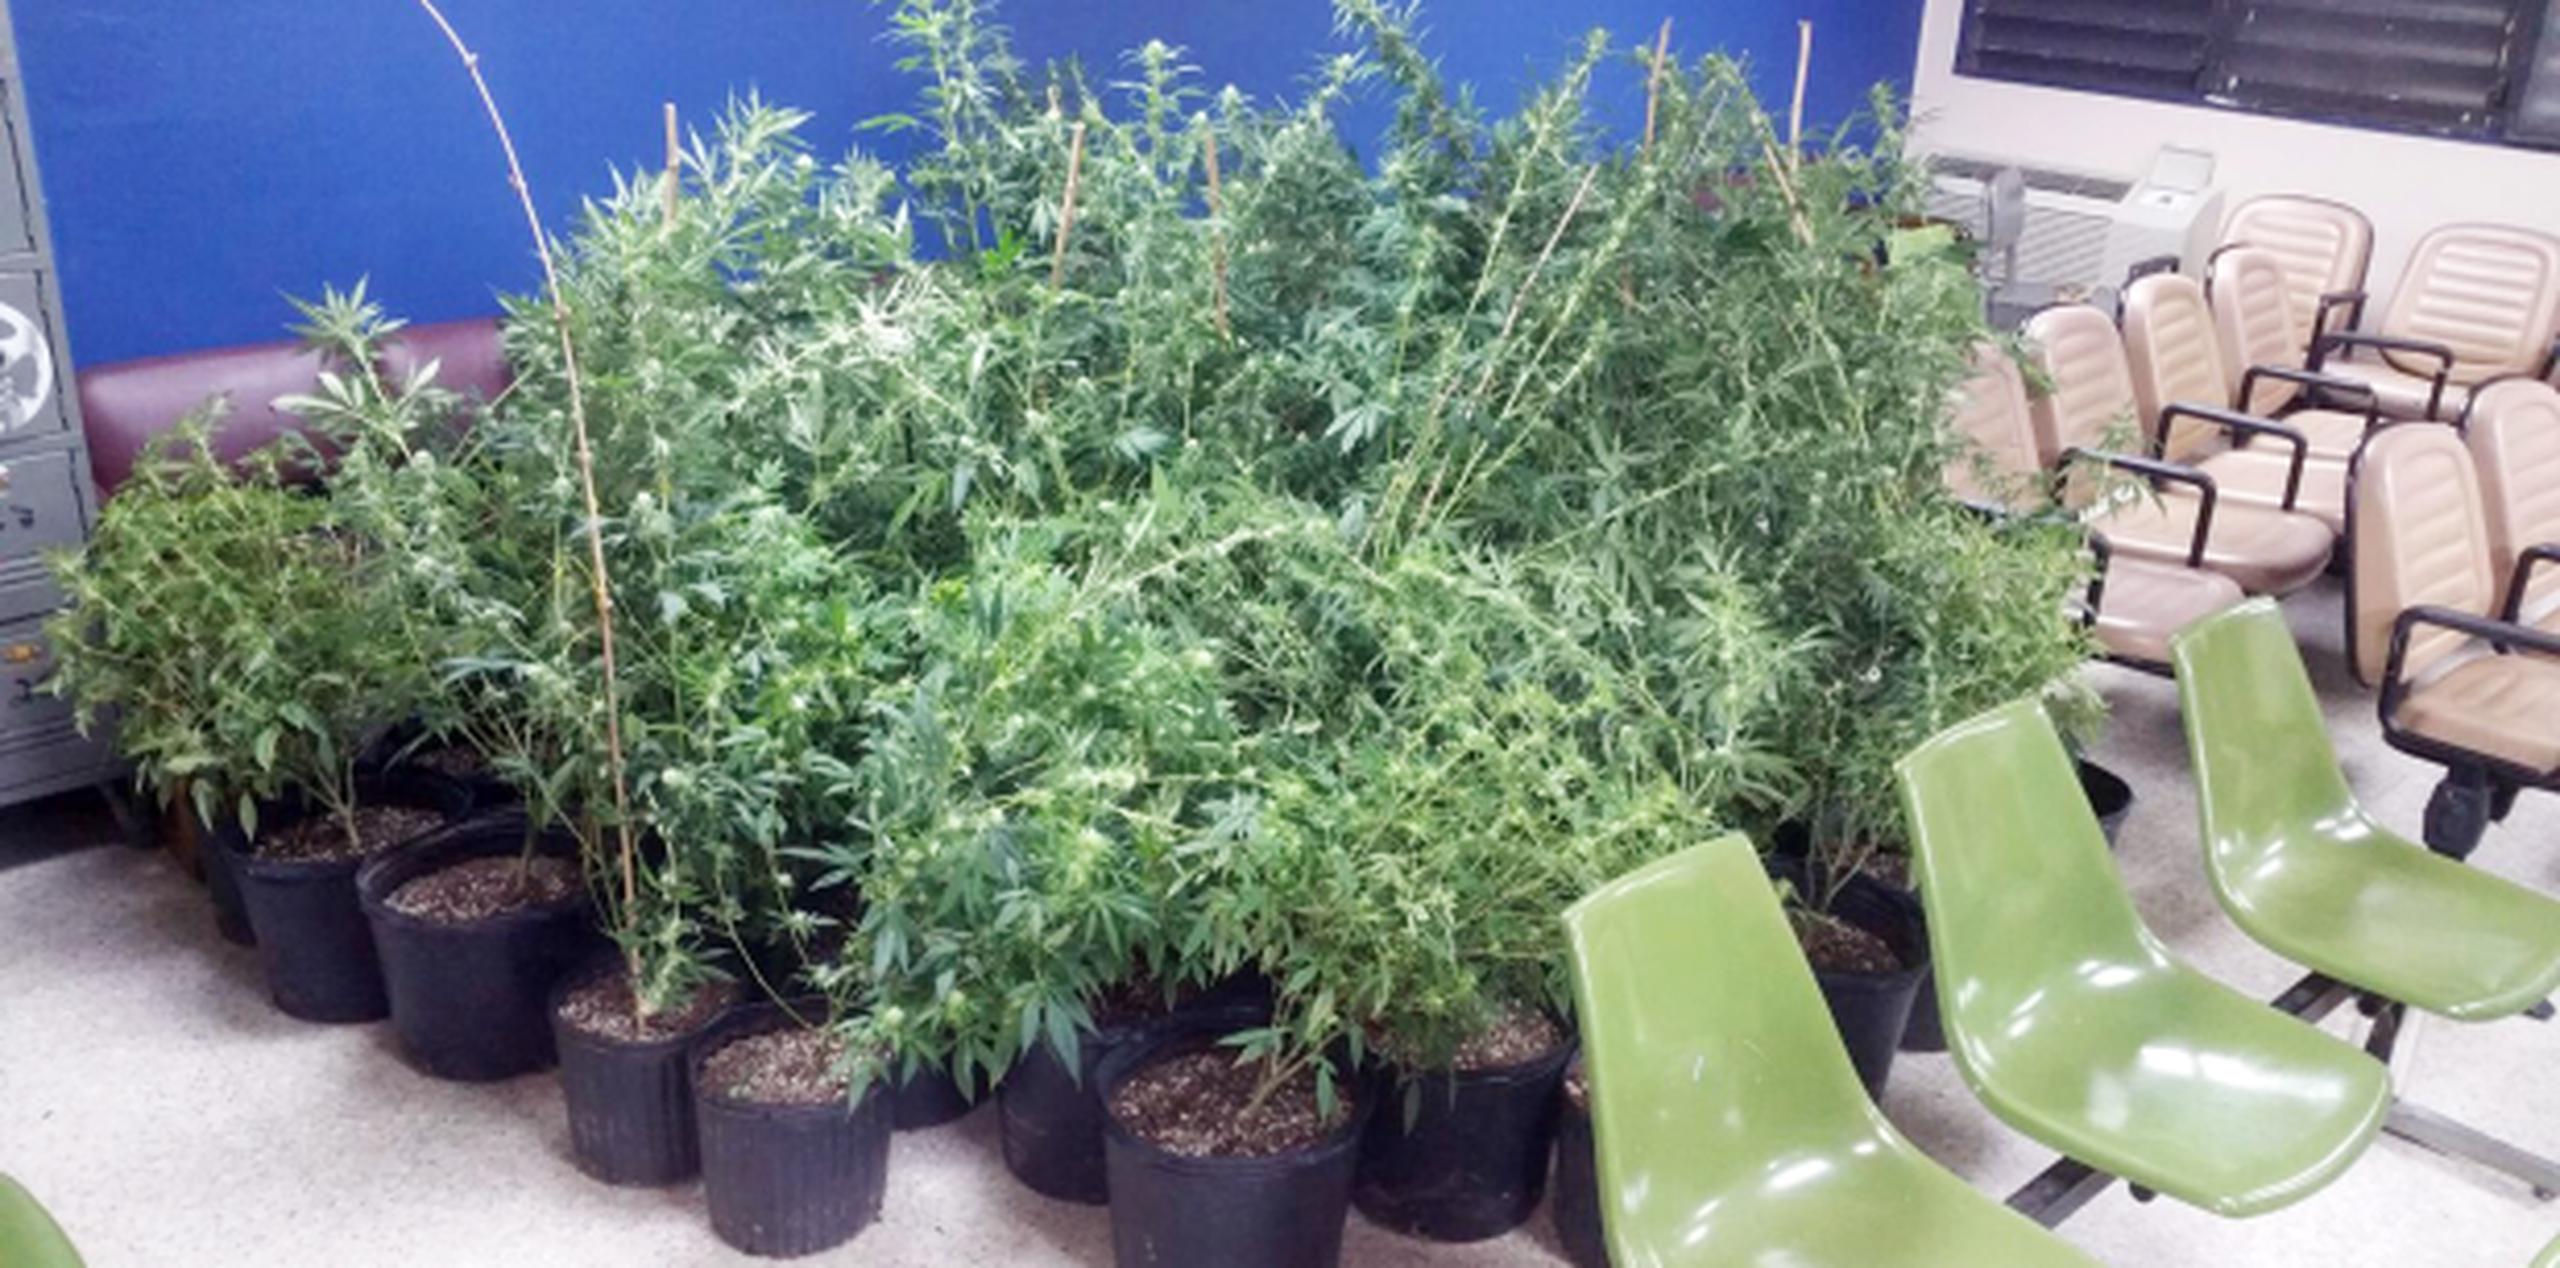 La policía ocupó alrededor de 50 plantas de marihuana. (Suministrada)